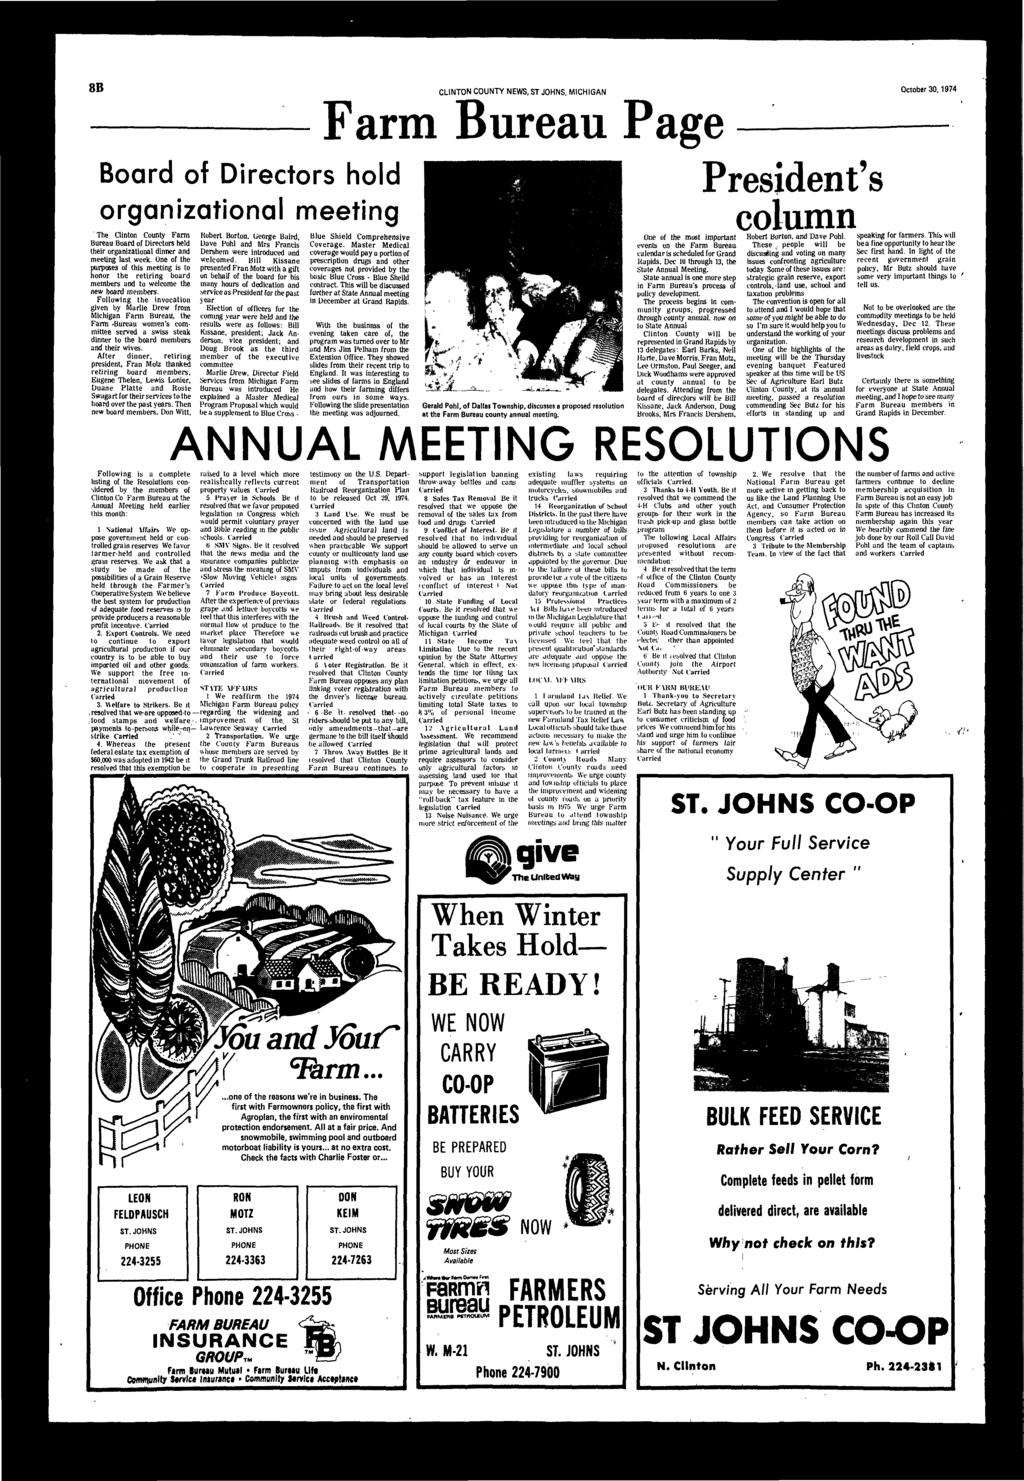 8B CLINTON COUNTY NEWS, ST JOHNS, MICHIGAN October 30,1974 Frm Bureu Pge Bord of irectors hold orgniztionl meeting The Clinton County Frm Bureu Bord of irectors held their orgniztionl dinner meeting